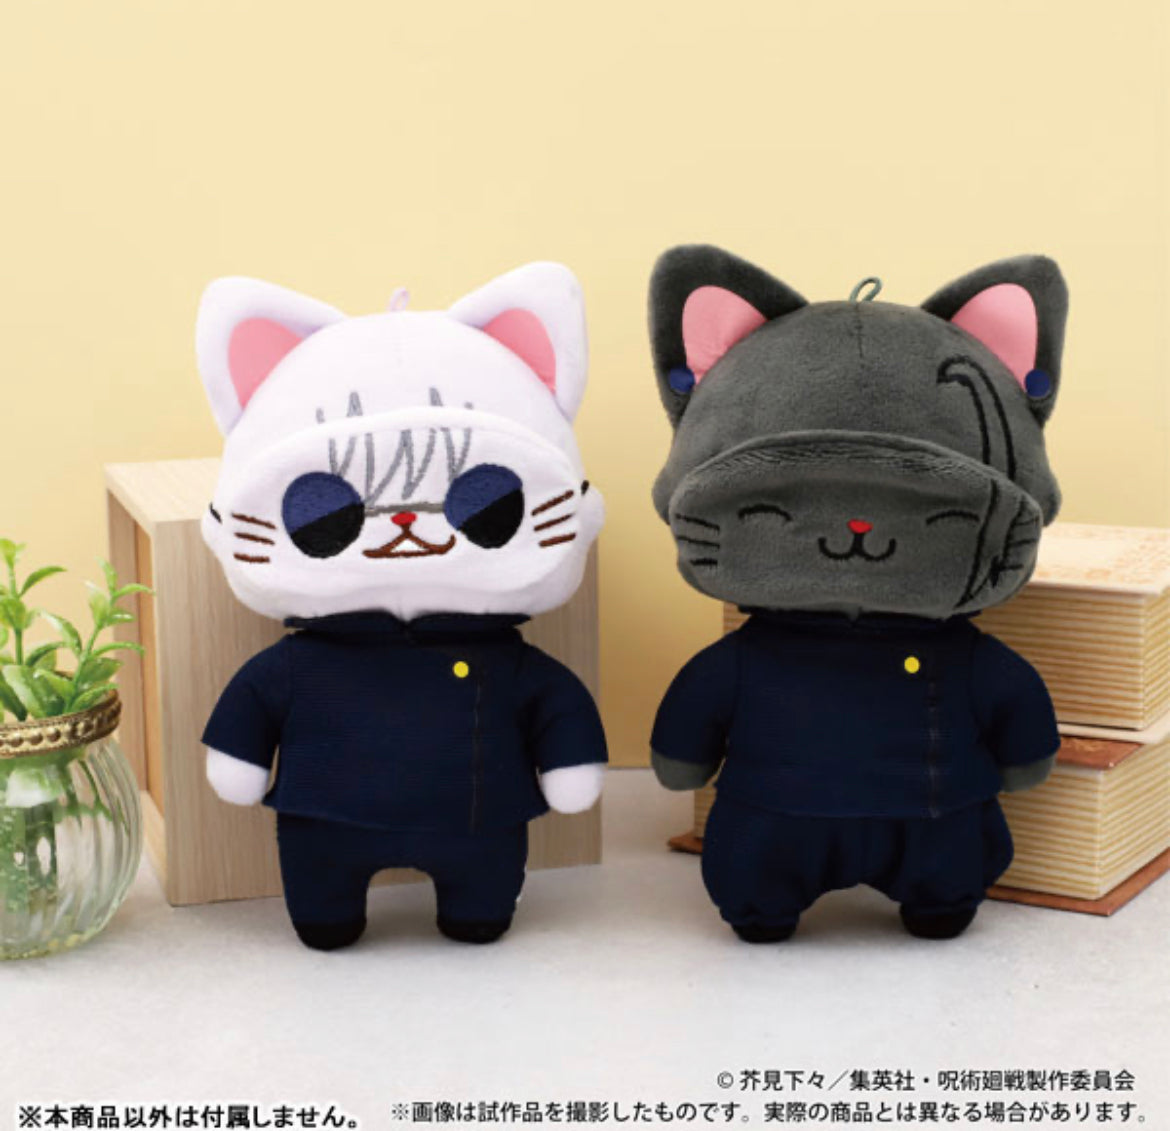 PREORDER Jujutsu Kaisen Gojo & Geto Cat Plush Mascots